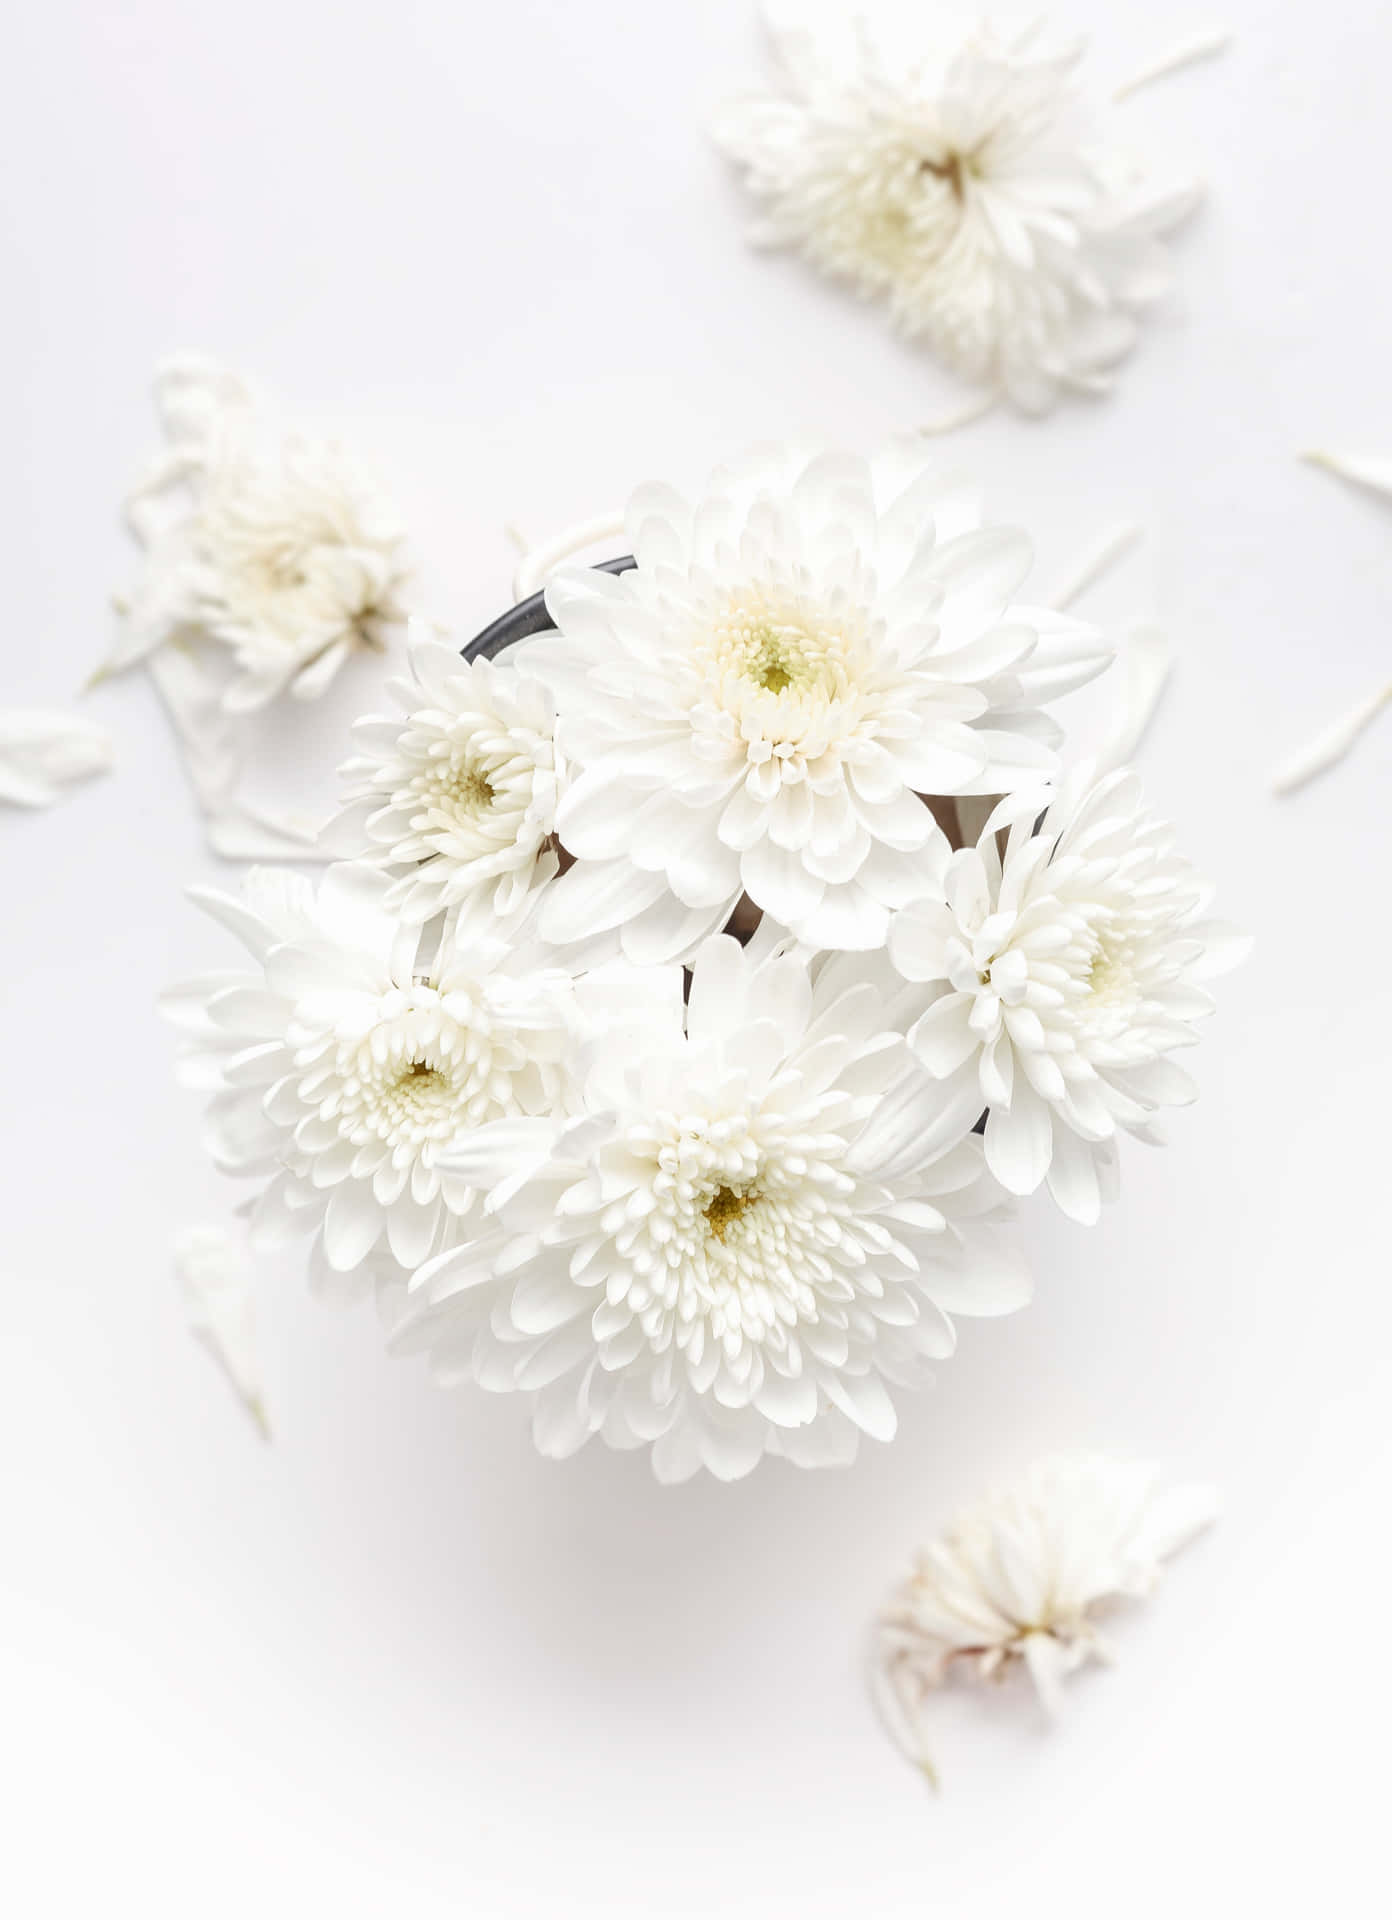 White Flower on Plain Background